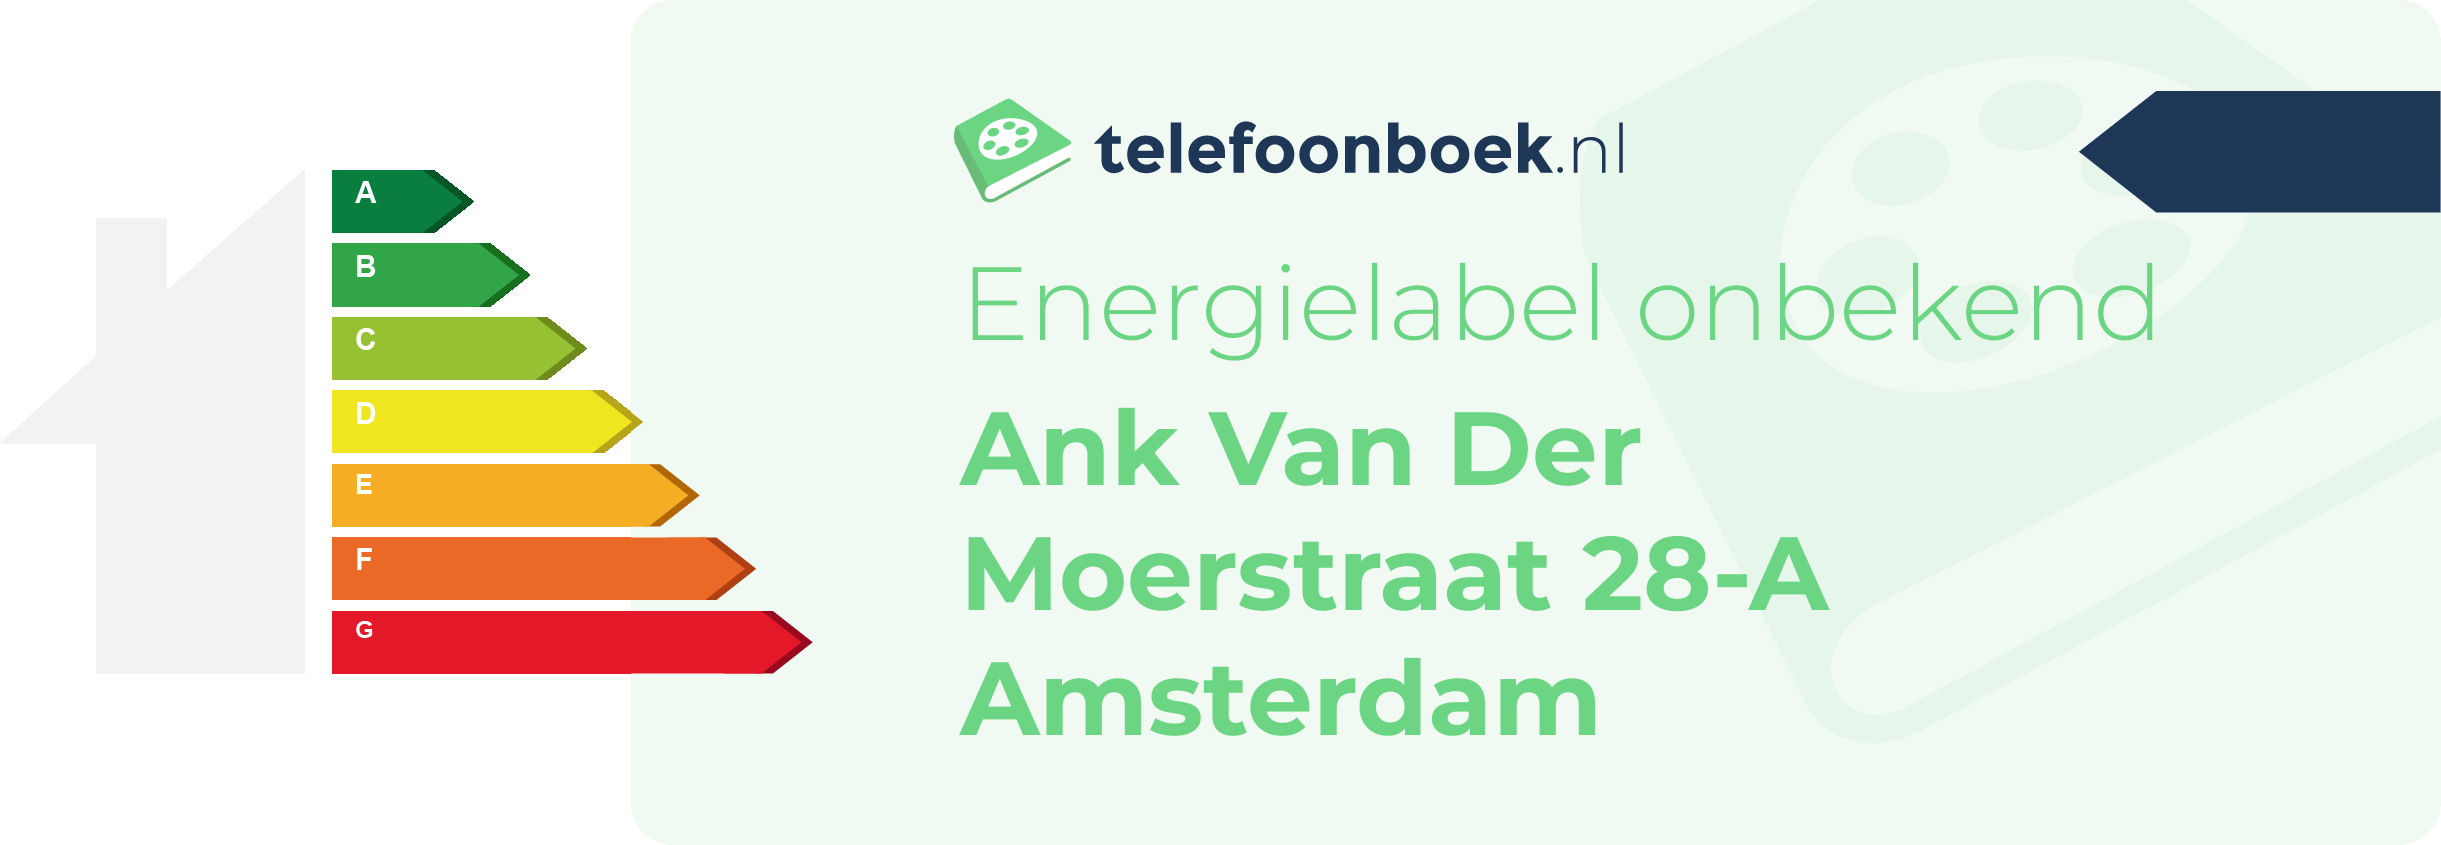 Energielabel Ank Van Der Moerstraat 28-A Amsterdam